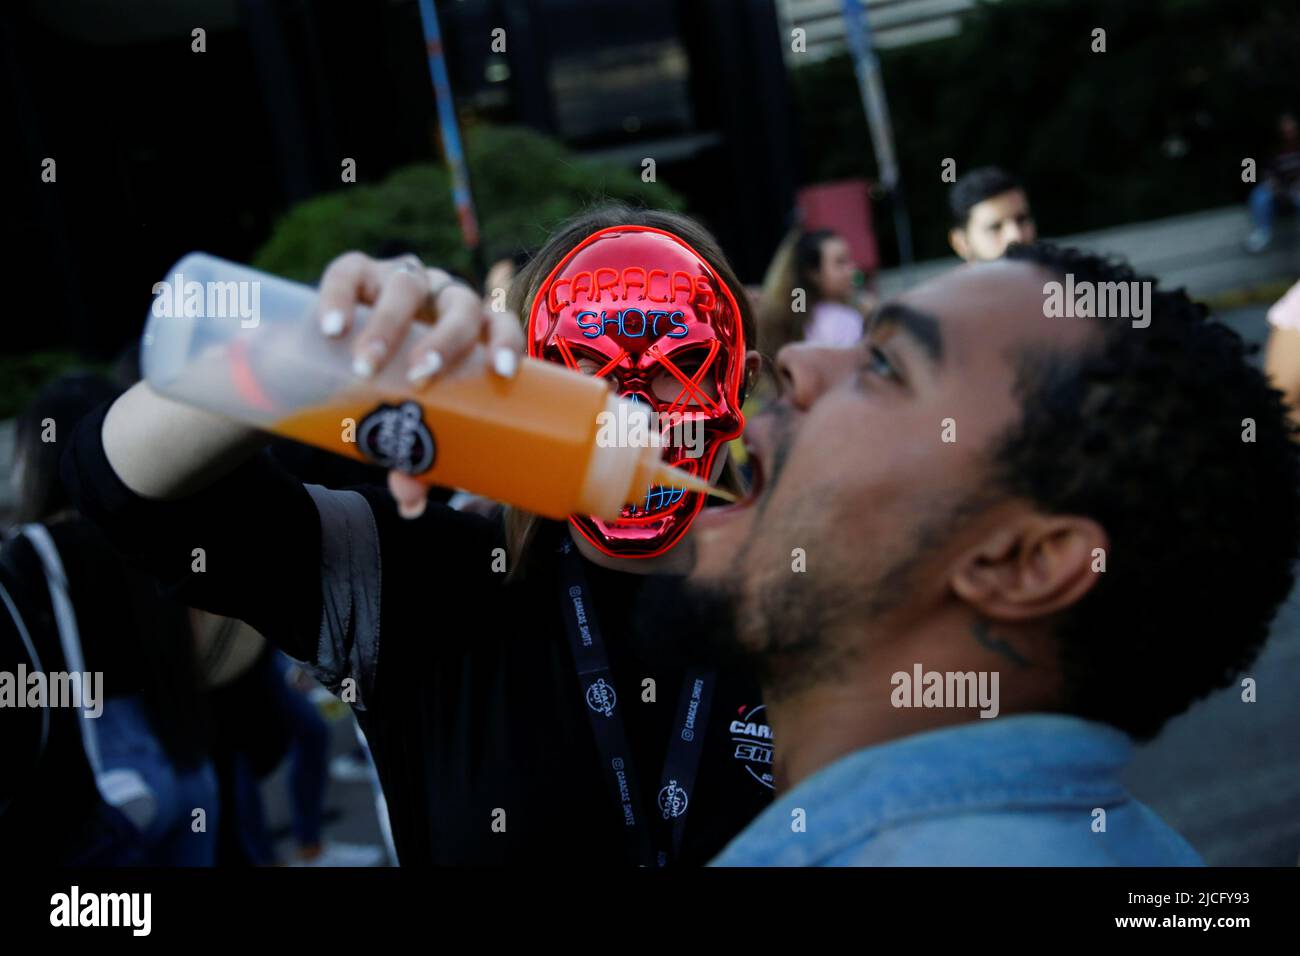 Una mujer que lleva una máscara de la película 'The Purge' le da a un  hombre una bebida durante un festival de música urbana albergado en el  estacionamiento abierto de un centro